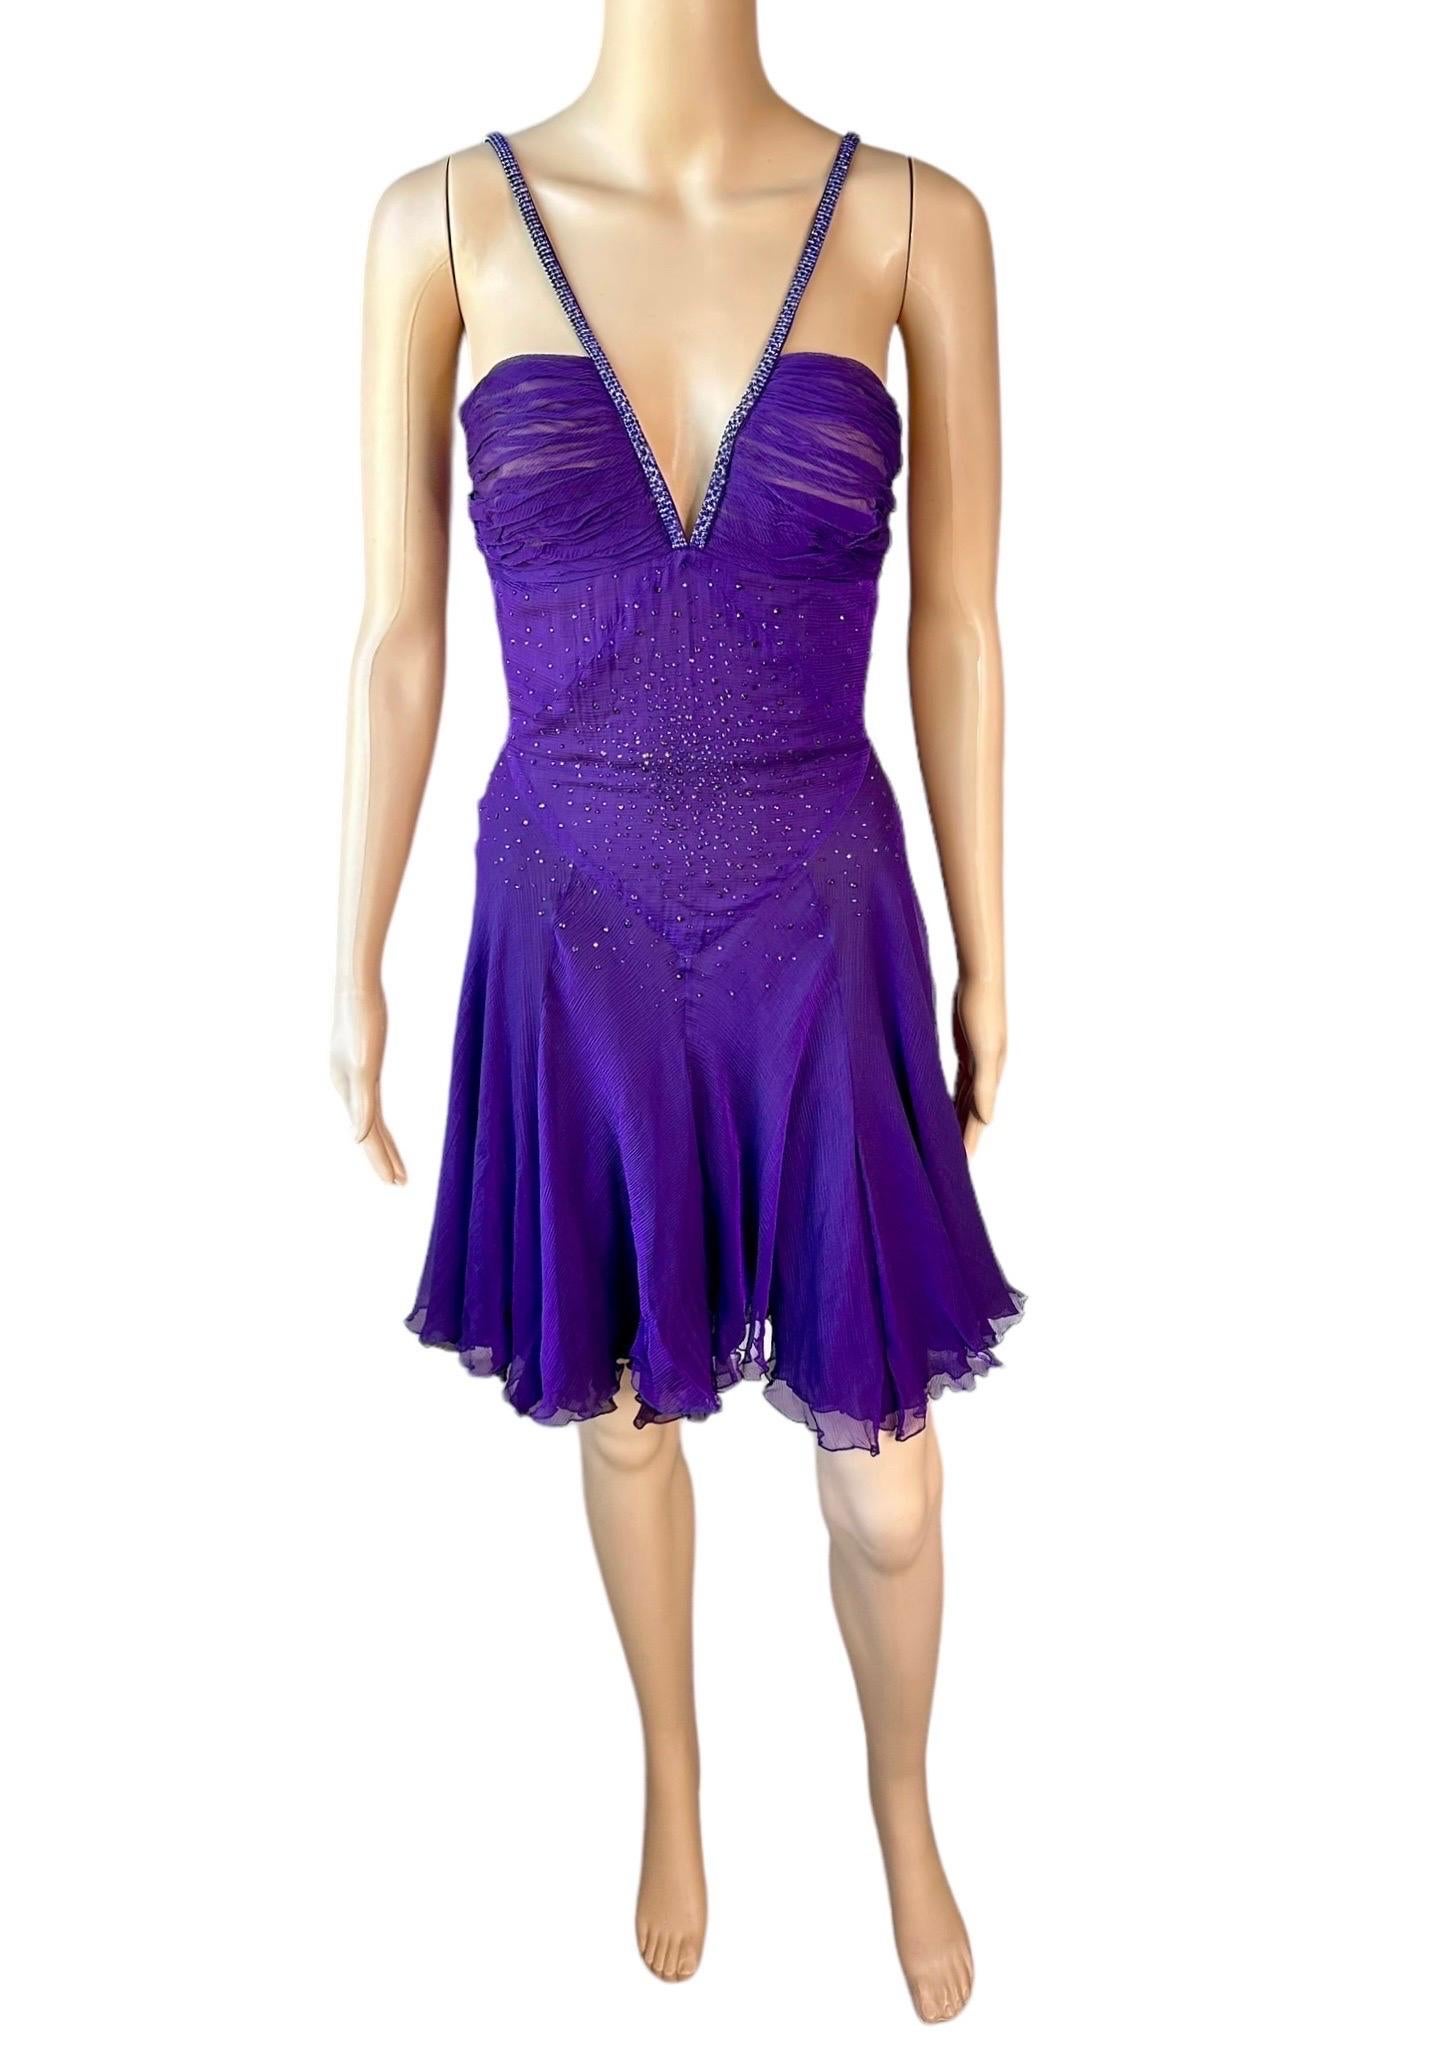 Versace c.2007 Crystal Embellished Plunging Neckline Semi-Sheer Purple Dress For Sale 8